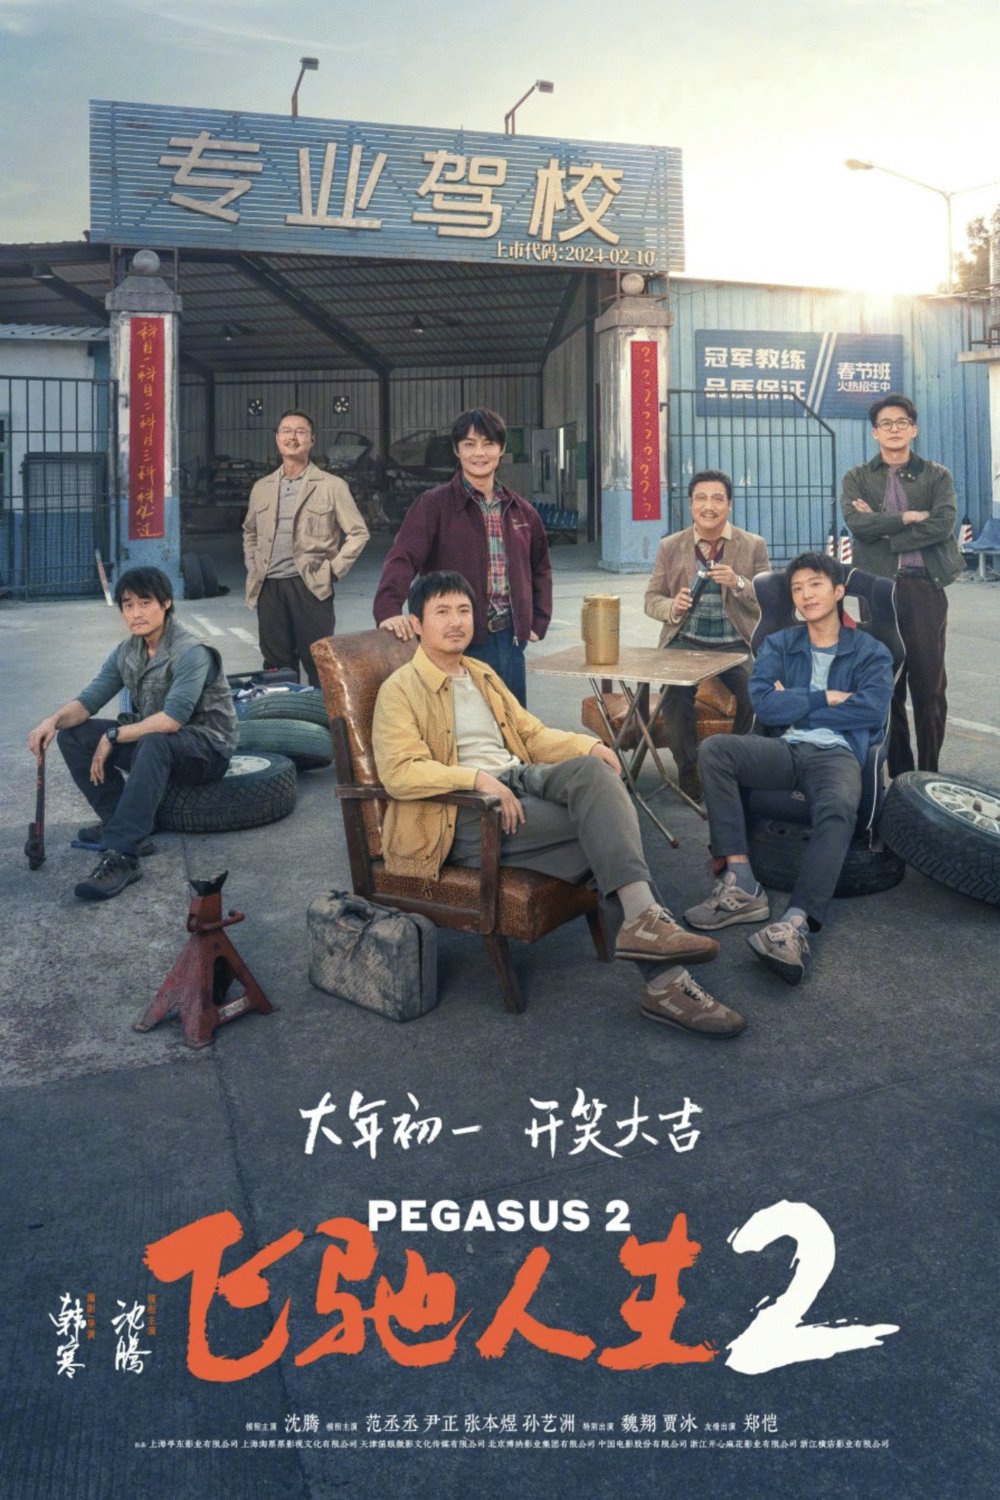 L'affiche originale du film Pegasus 2 en Chinois